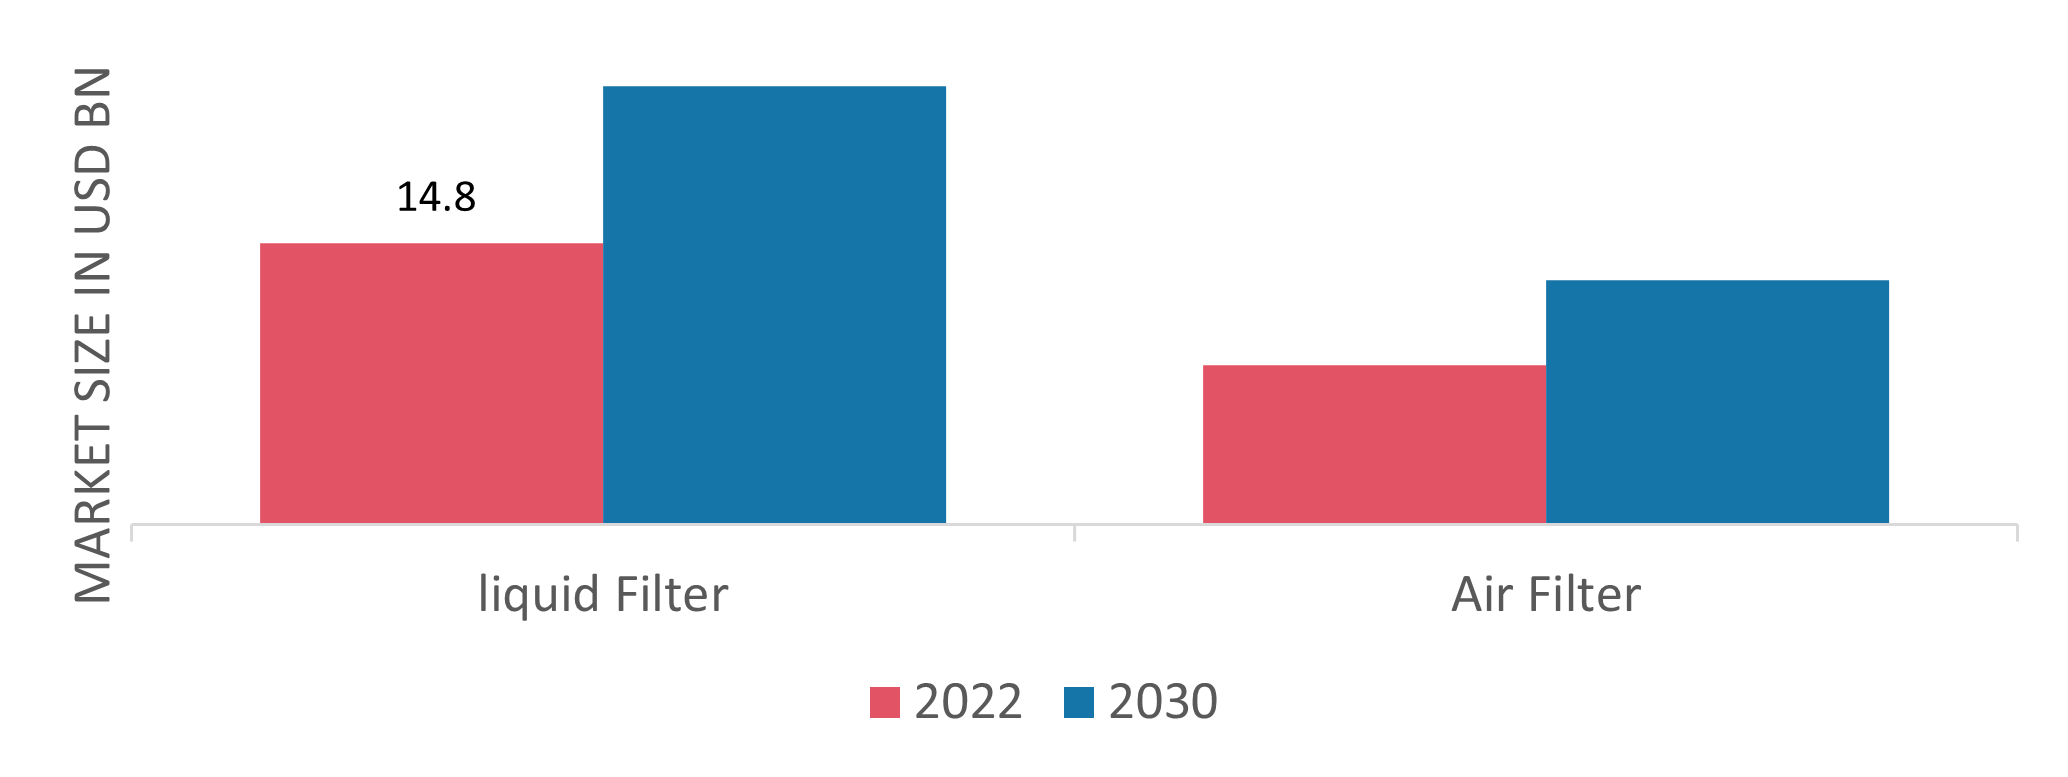 Industrial Filtration Market, by type, 2022 & 2030 (USD billion)